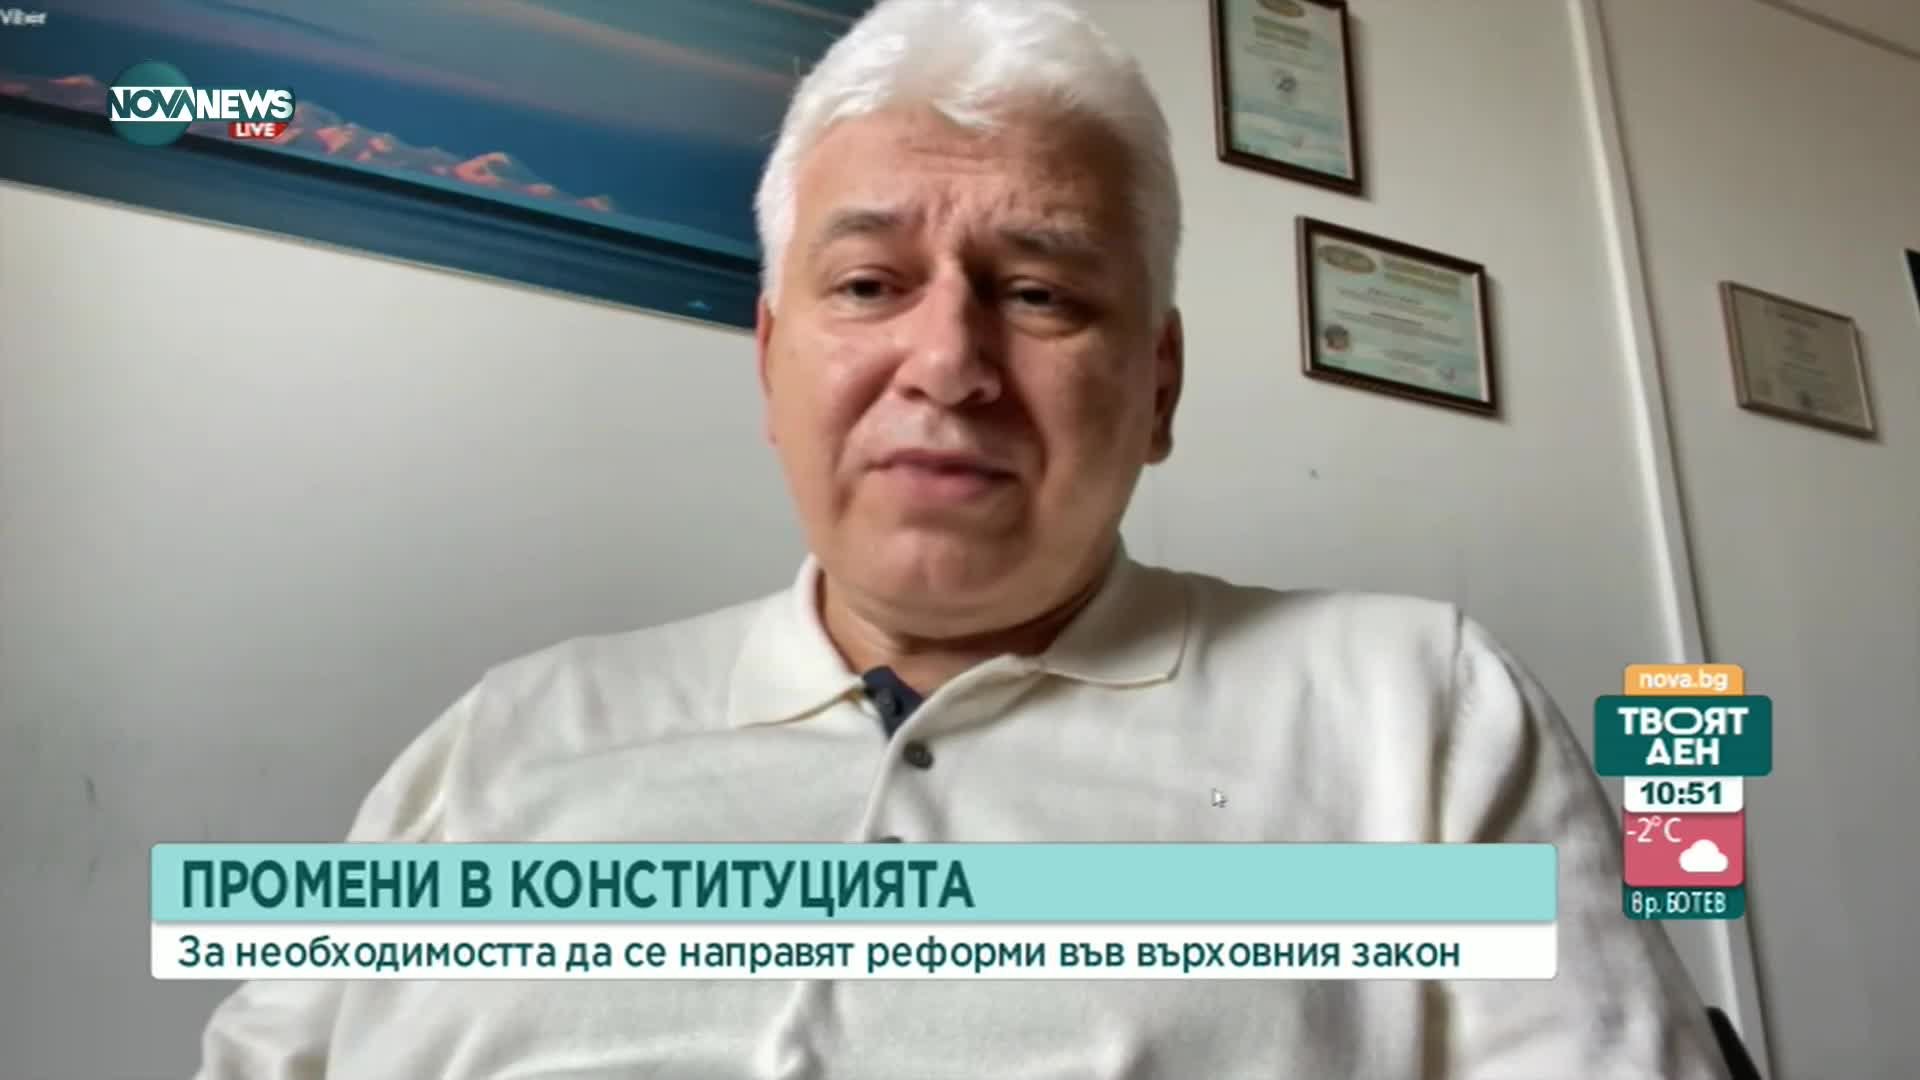 Проф. Киров: Не е фатално изборите да са и след Великден, имаме стабилен служебен кабинет